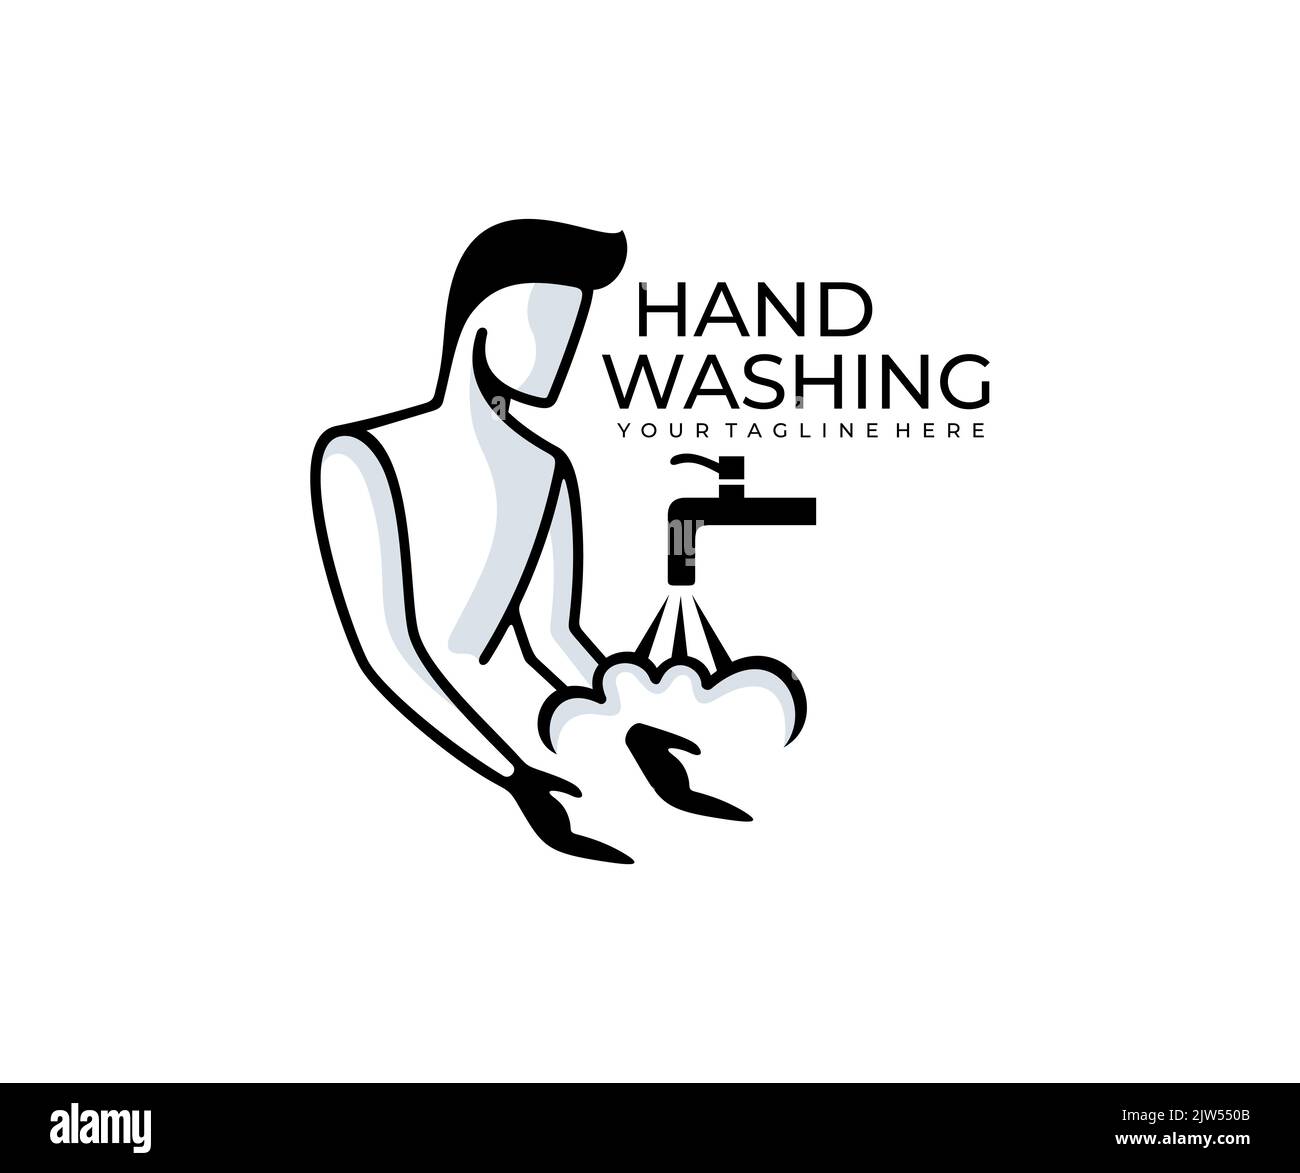 L'homme lave ses mains et l'eau coule du robinet, logo. Propreté, hygiène et hygiène, conception et illustration de vecteurs Illustration de Vecteur